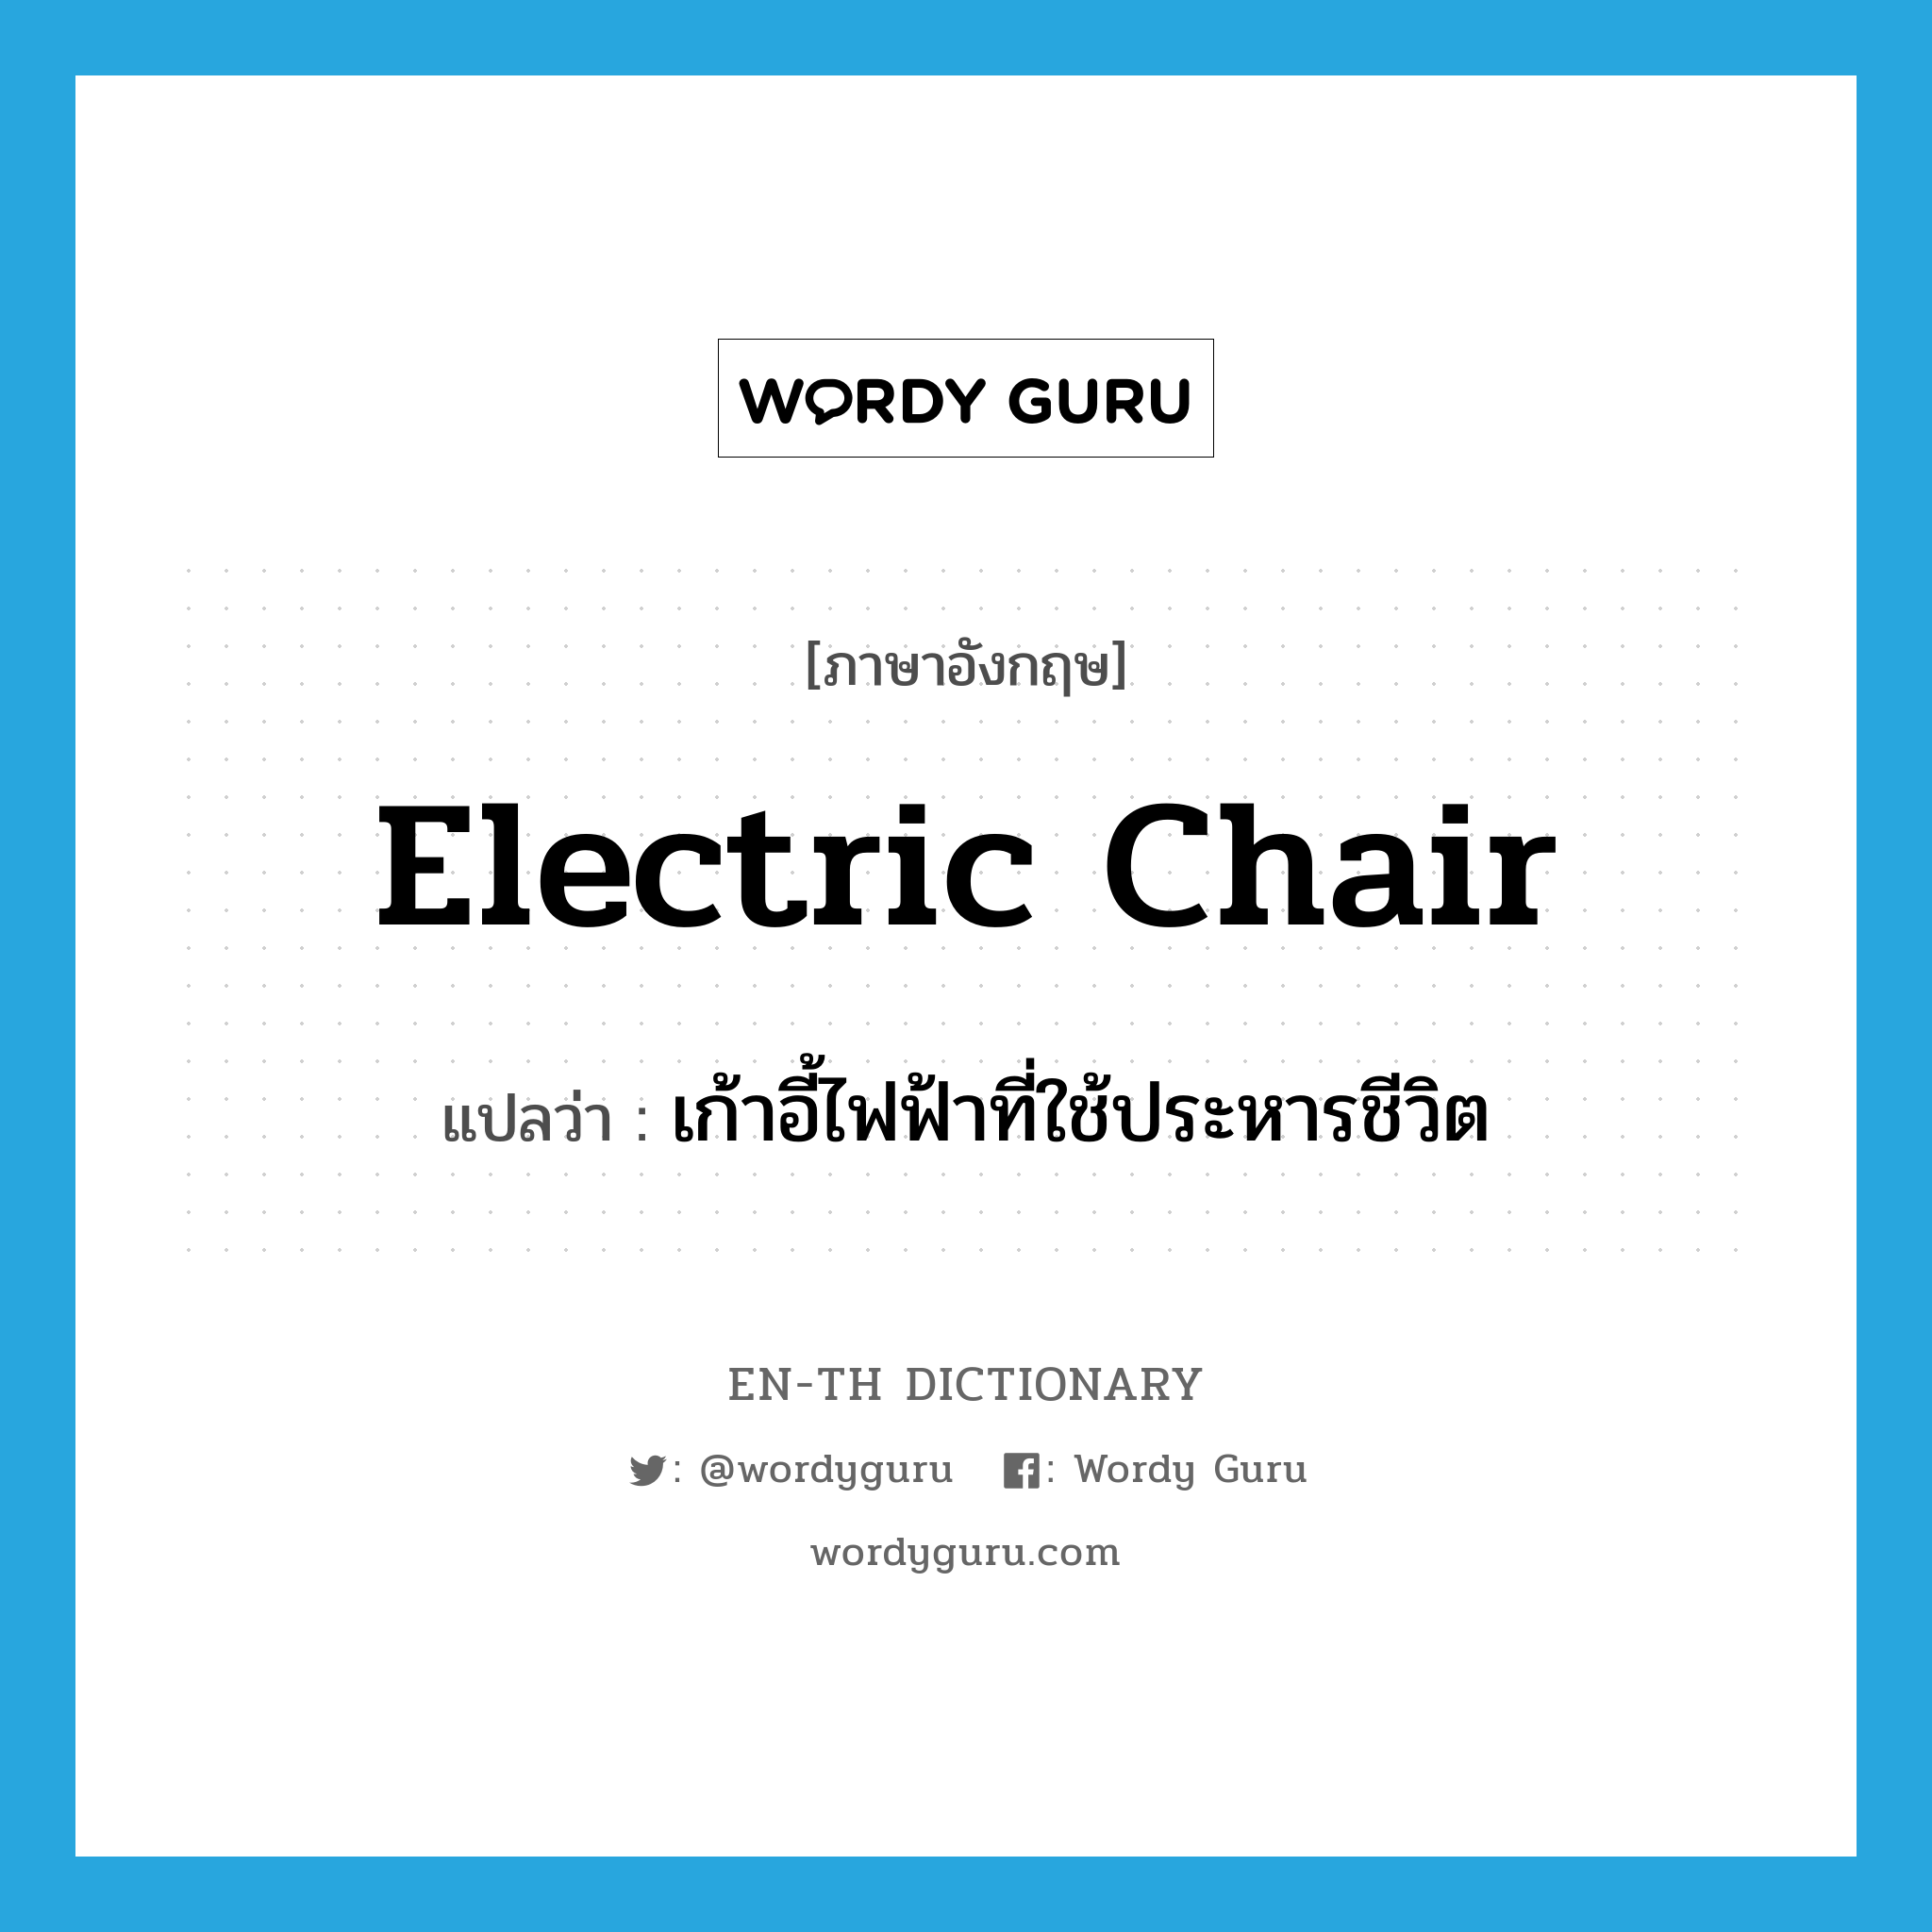 เก้าอี้ไฟฟ้าที่ใช้ประหารชีวิต ภาษาอังกฤษ?, คำศัพท์ภาษาอังกฤษ เก้าอี้ไฟฟ้าที่ใช้ประหารชีวิต แปลว่า electric chair ประเภท N หมวด N